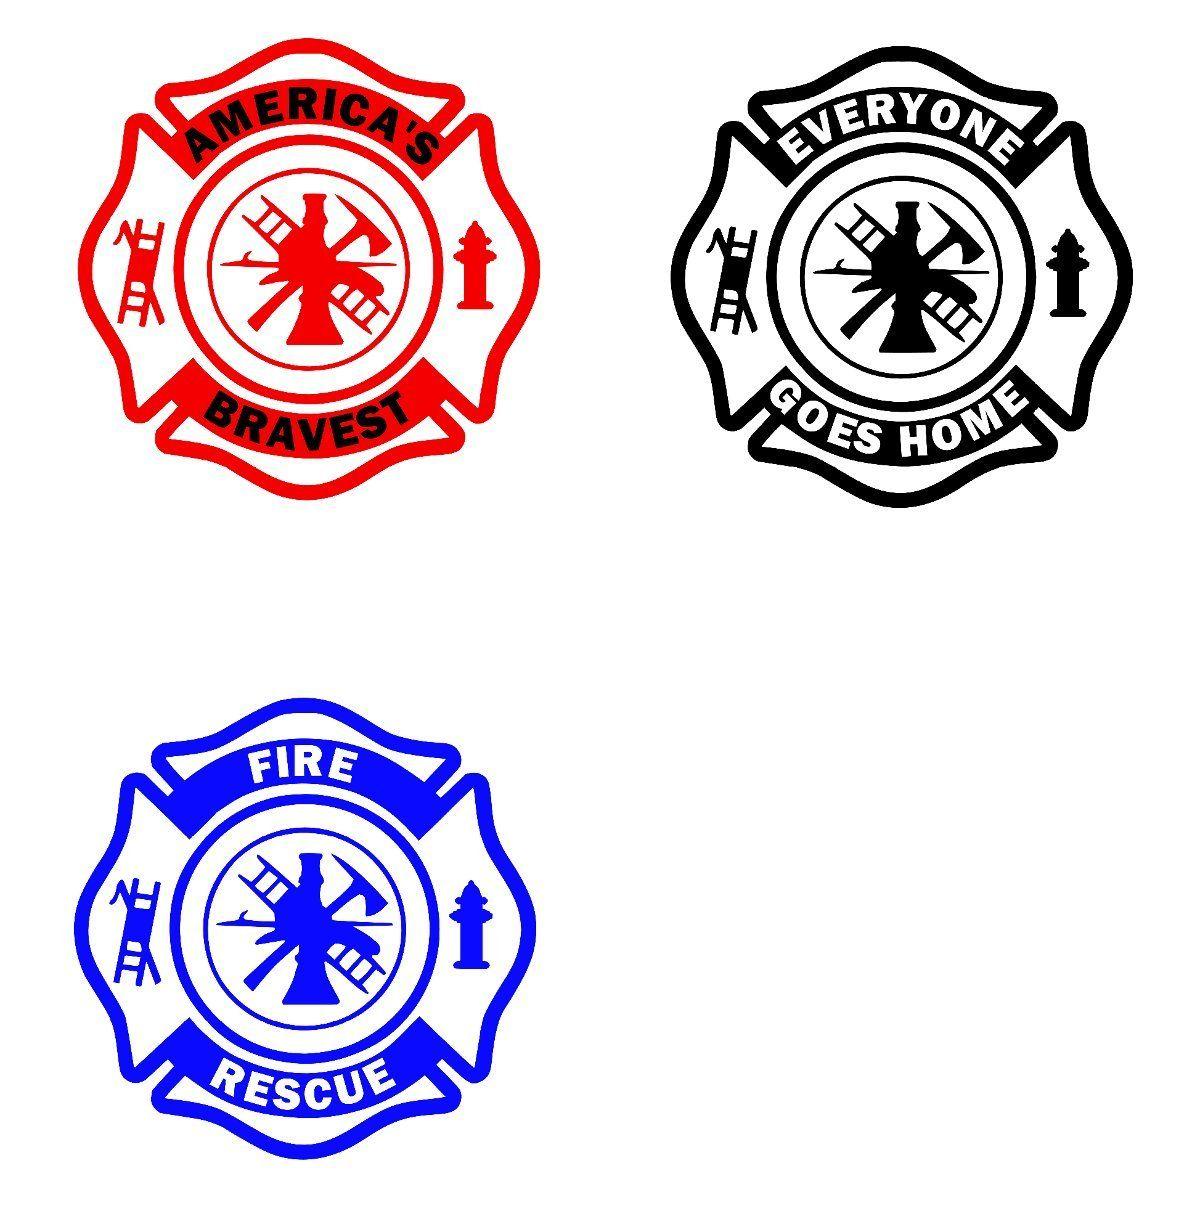 Fire Cross Logo - Firefighter Fire Rescue Maltese Cross Sticker Decal